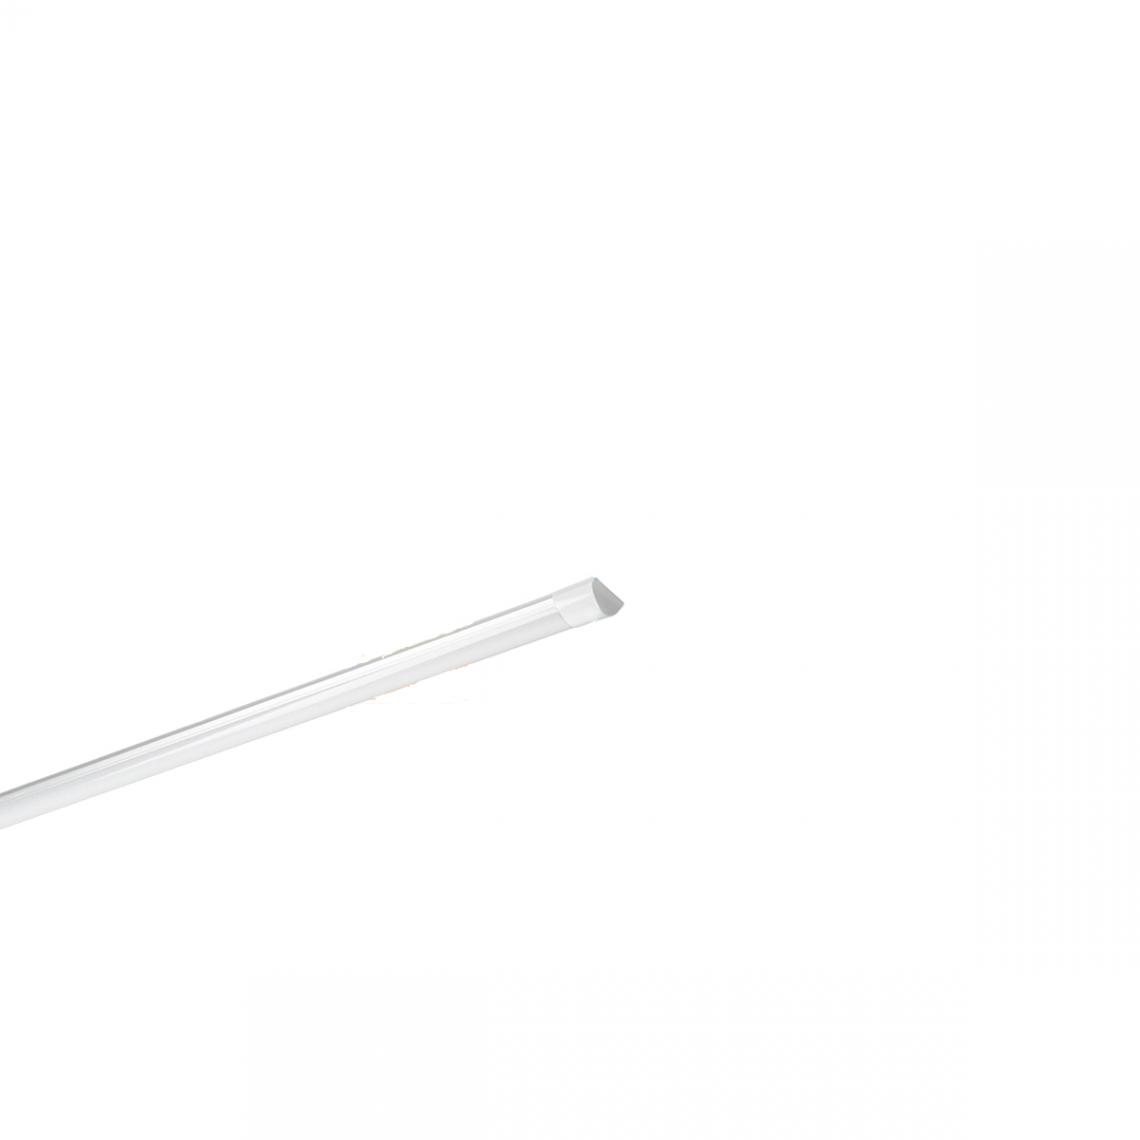 Ecd Germany - Set 4x Lampe tube linéaire plafond 45W 150cm blanc froid batten light bureau néon led - Tubes et néons